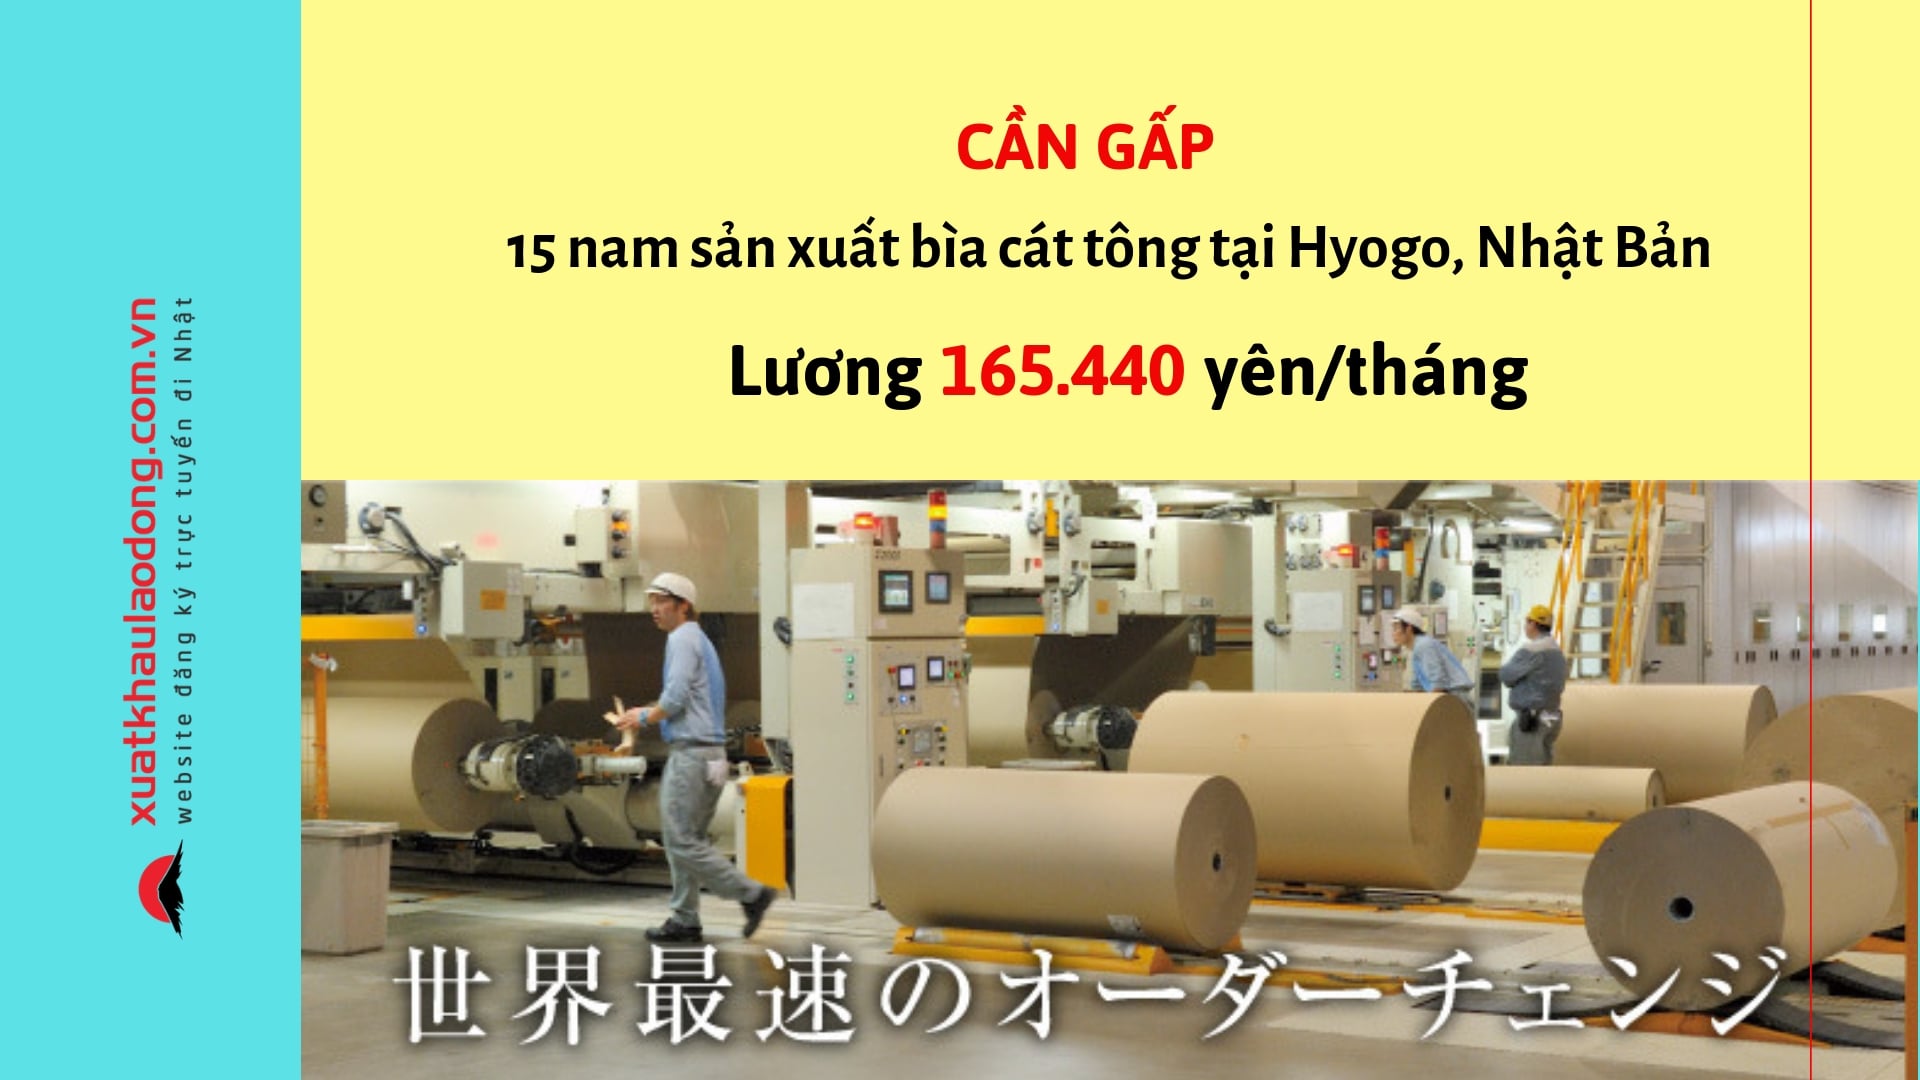 đơn hàng 15 nam sản xuất bìa cát tông lương 165,440 yên/tháng tại Hyogo